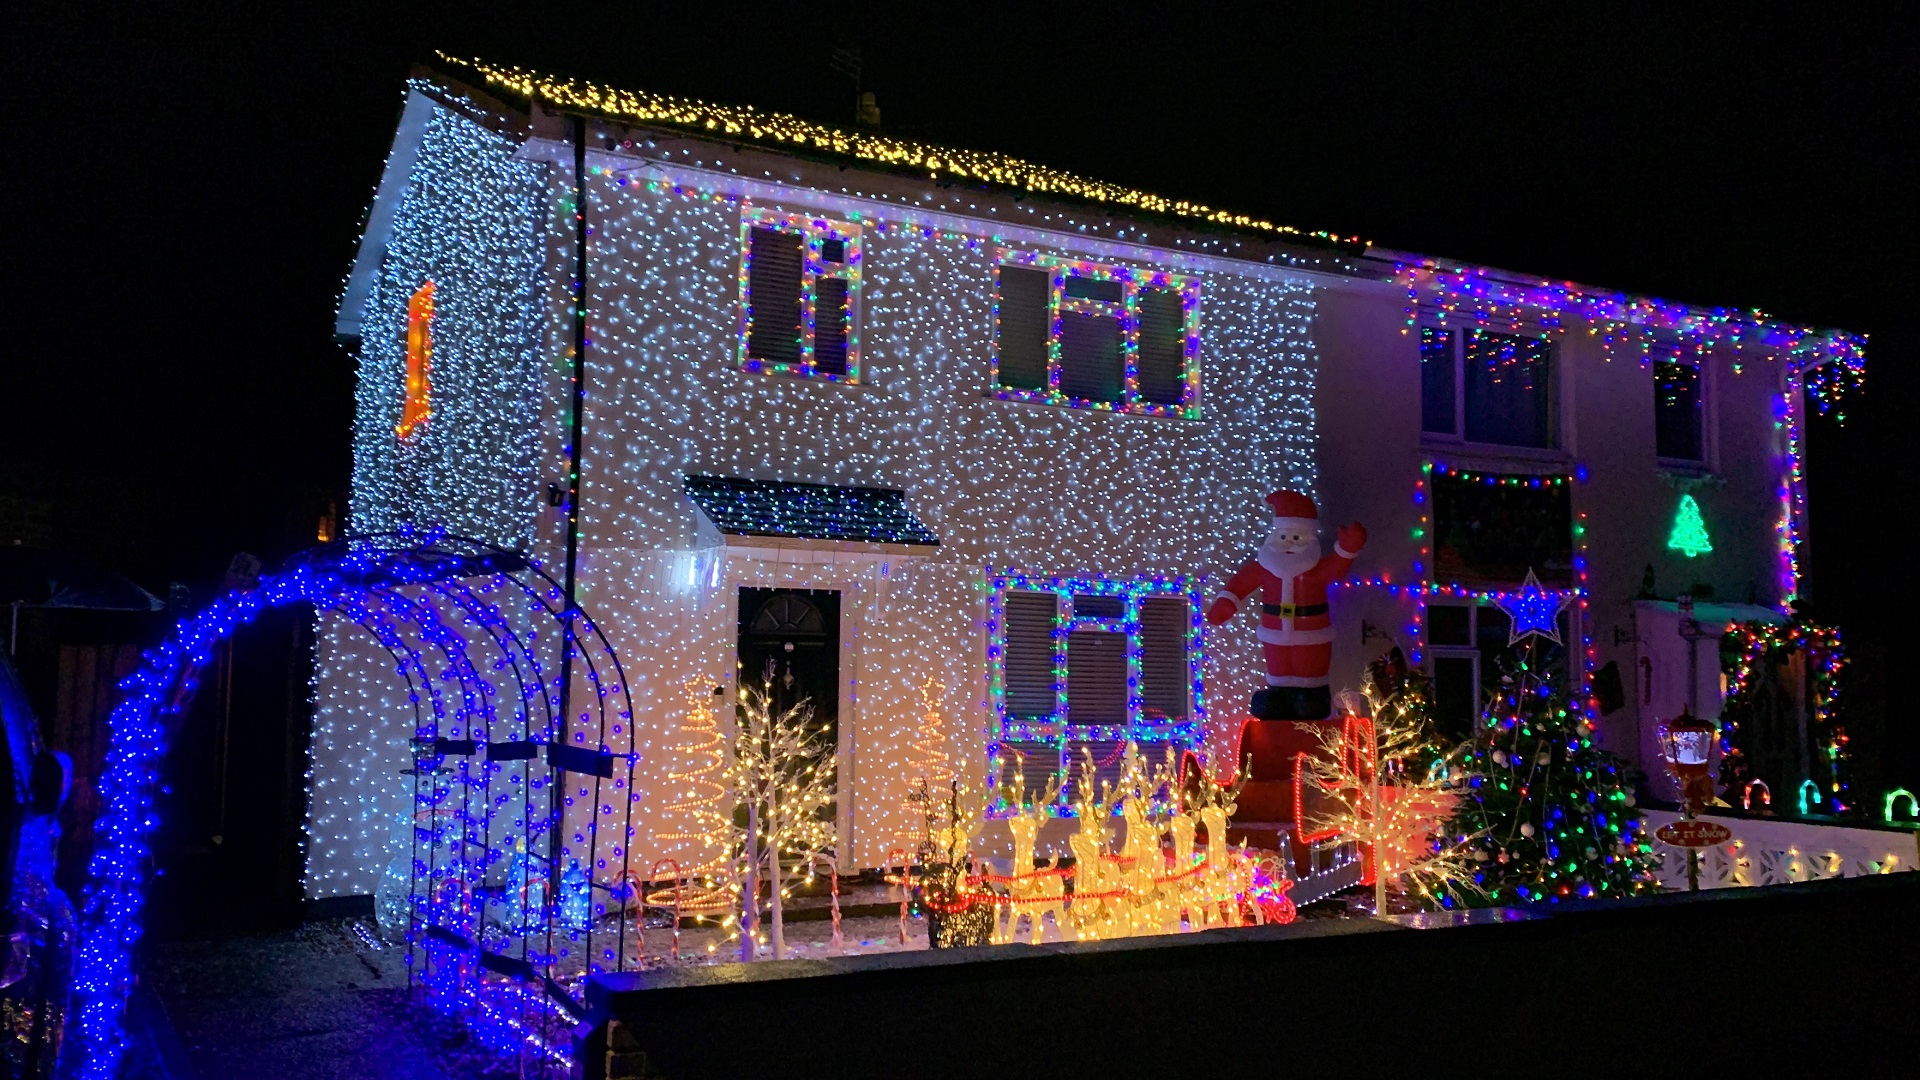 Mark Abbott formerly homeless now has Christmas lights